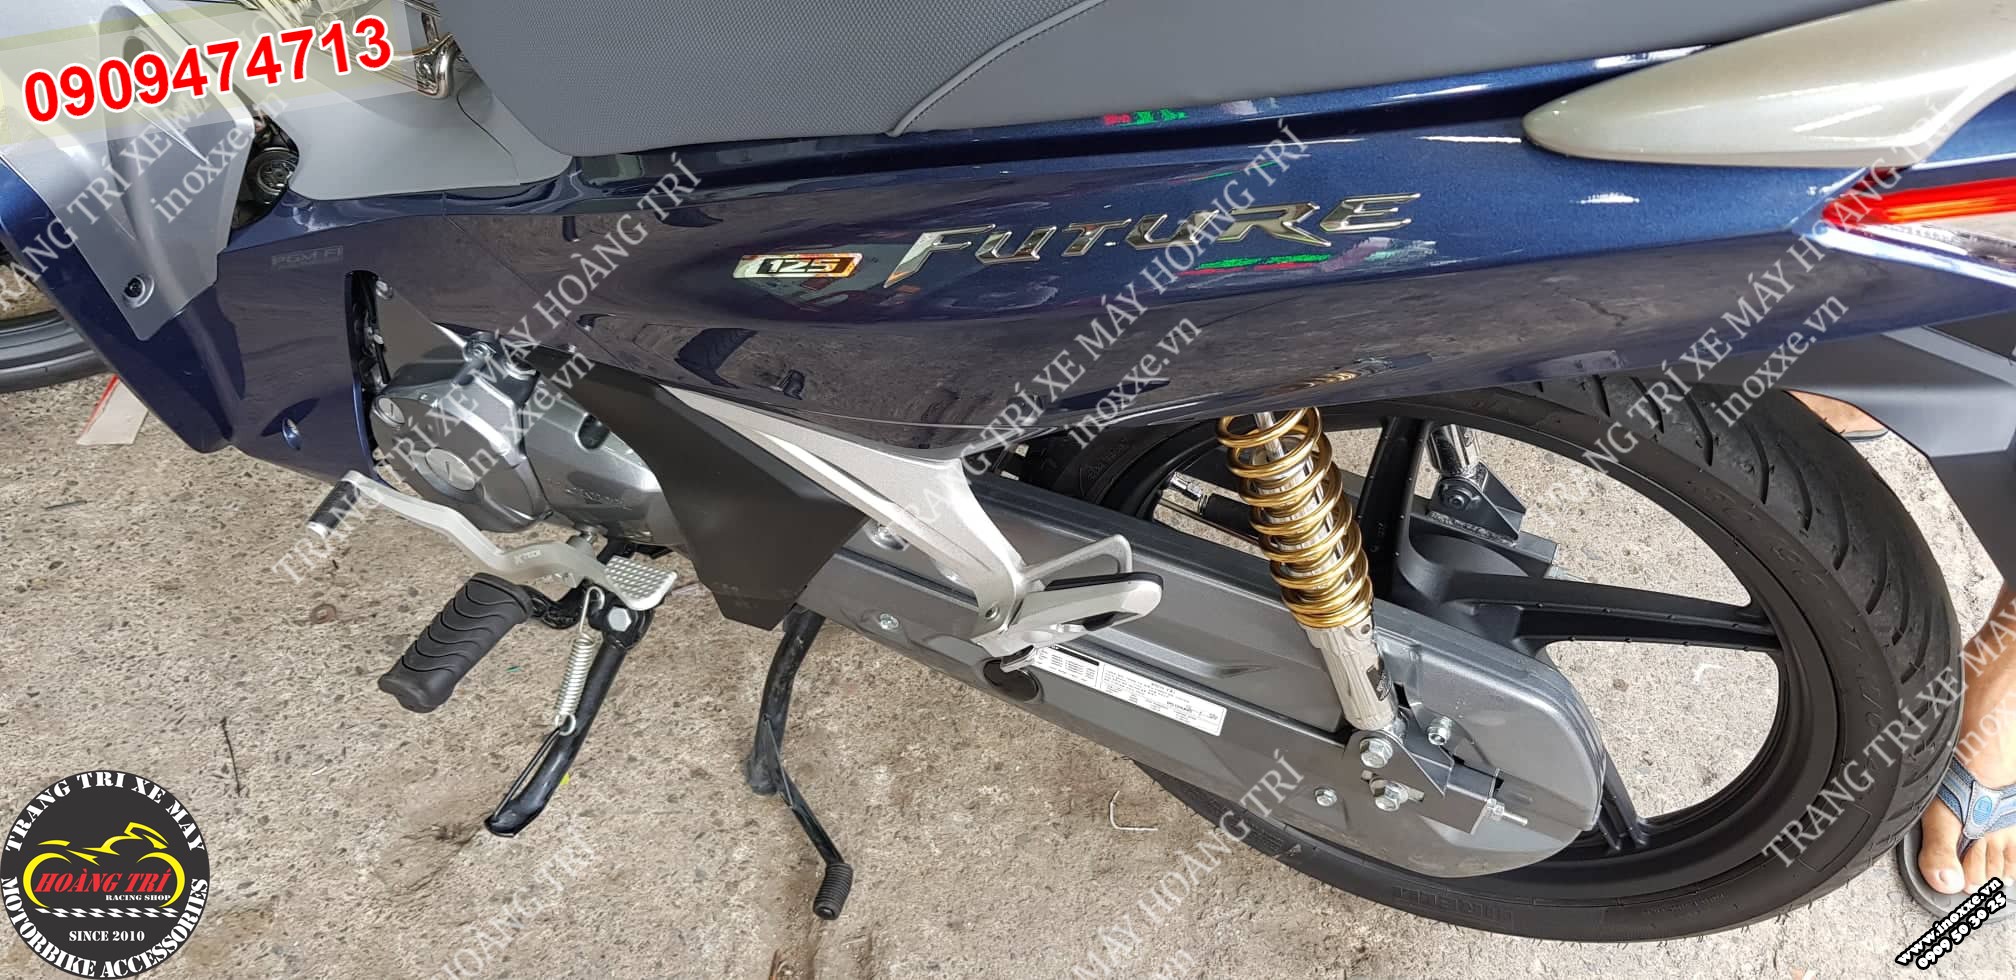 Gác chân Ducati lắp cho Future 2018 -  ảnh số 4